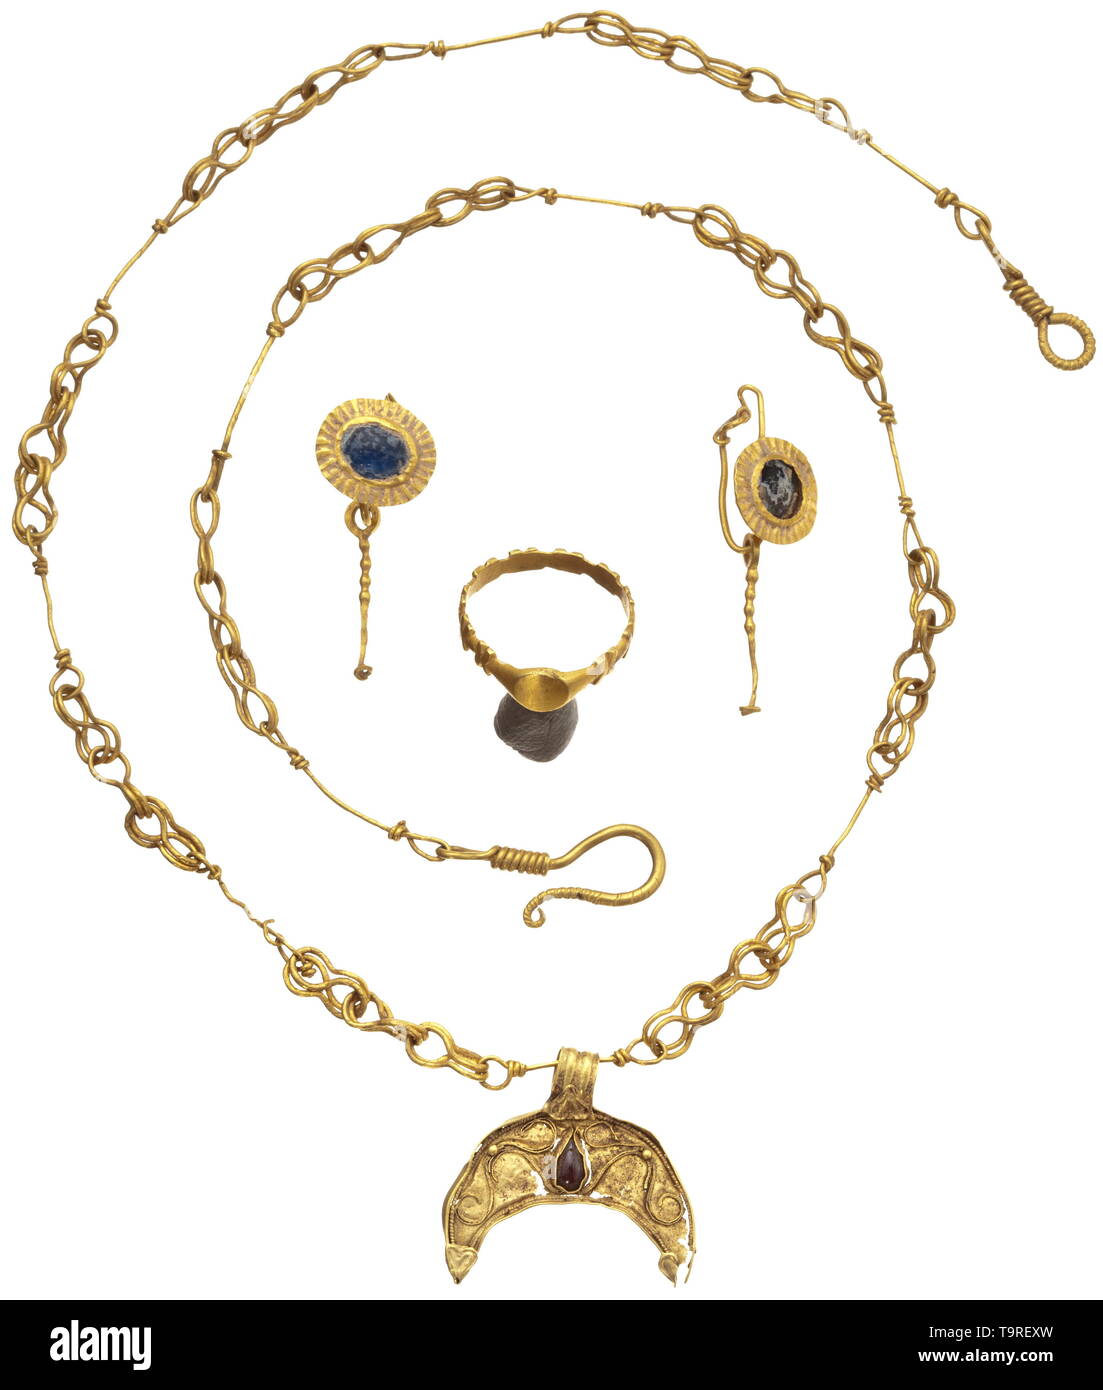 Eine zugehörige Römischen Gold Schmuck Ensemble, Ende 2. bis 3. Jahrhundert Lunula Anhänger mit filigranen, zwei Kügelchen und ein Tropfen-förmigen Granat Inlay auf eine Drahtschleife Halskette. Zwischen den drei acht Links, eine gerade Verbindung mit zwei kurzen Wendeschleifen, die ursprünglich mit einer heute verlorenen Perle von organischem Material verziert war. Hakenverschluss. Länge geöffnet 43 cm, Länge der Lunula 2.2 cm. Ein Paar Ohrringe, auf der Vorderseite ein blauer Intarsie Medaillon mit einer Blende von gerippten Blech, hängen an der tatsächlichen Ring einen Draht pendilium, die ehemalige war, Additional-Rights - Clearance-Info - Not-Available Stockfoto